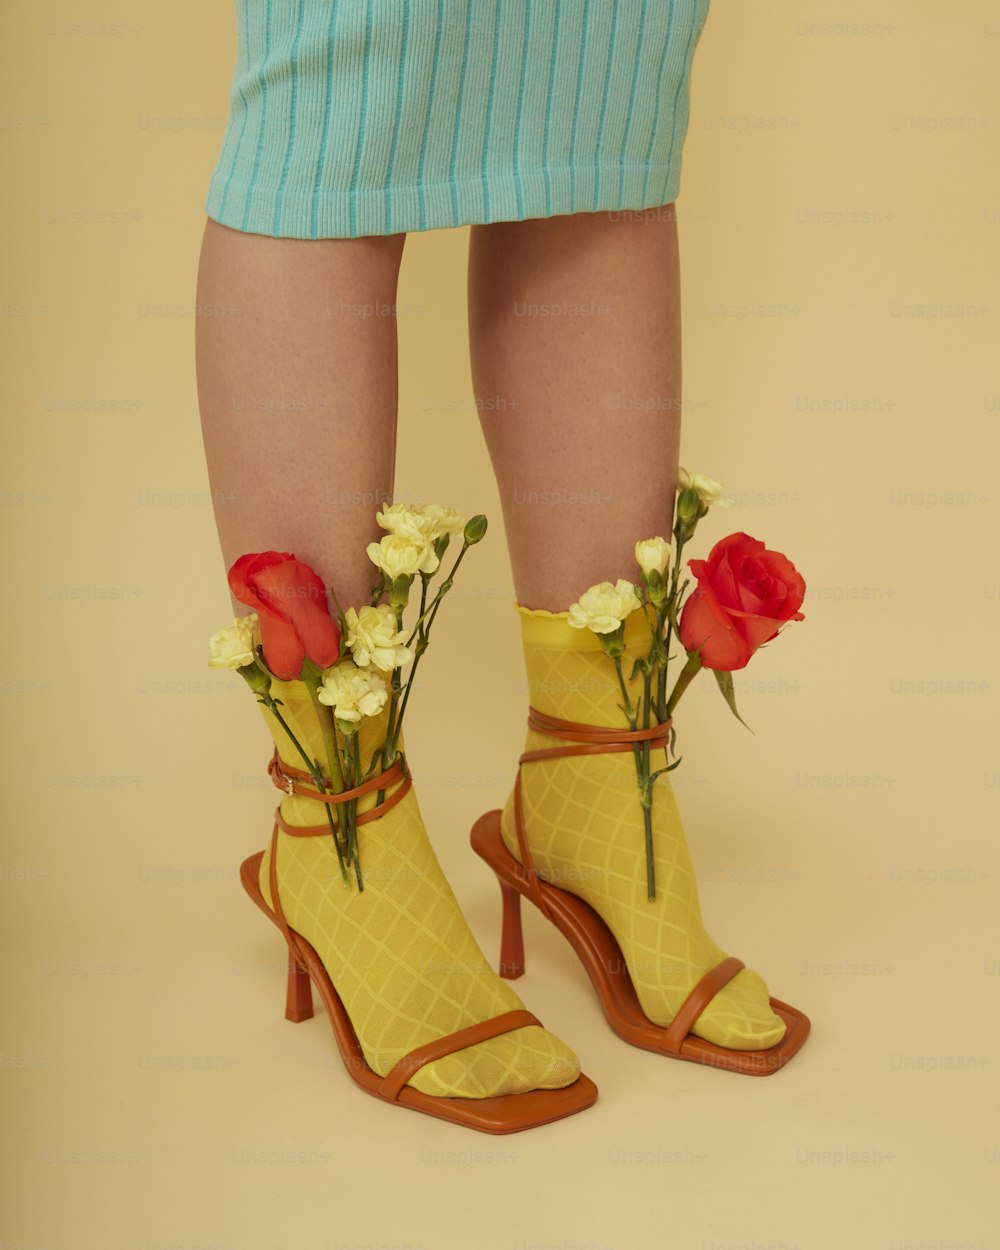 꽃이 든 노란색 신발을 신고 있는 여자의 다리